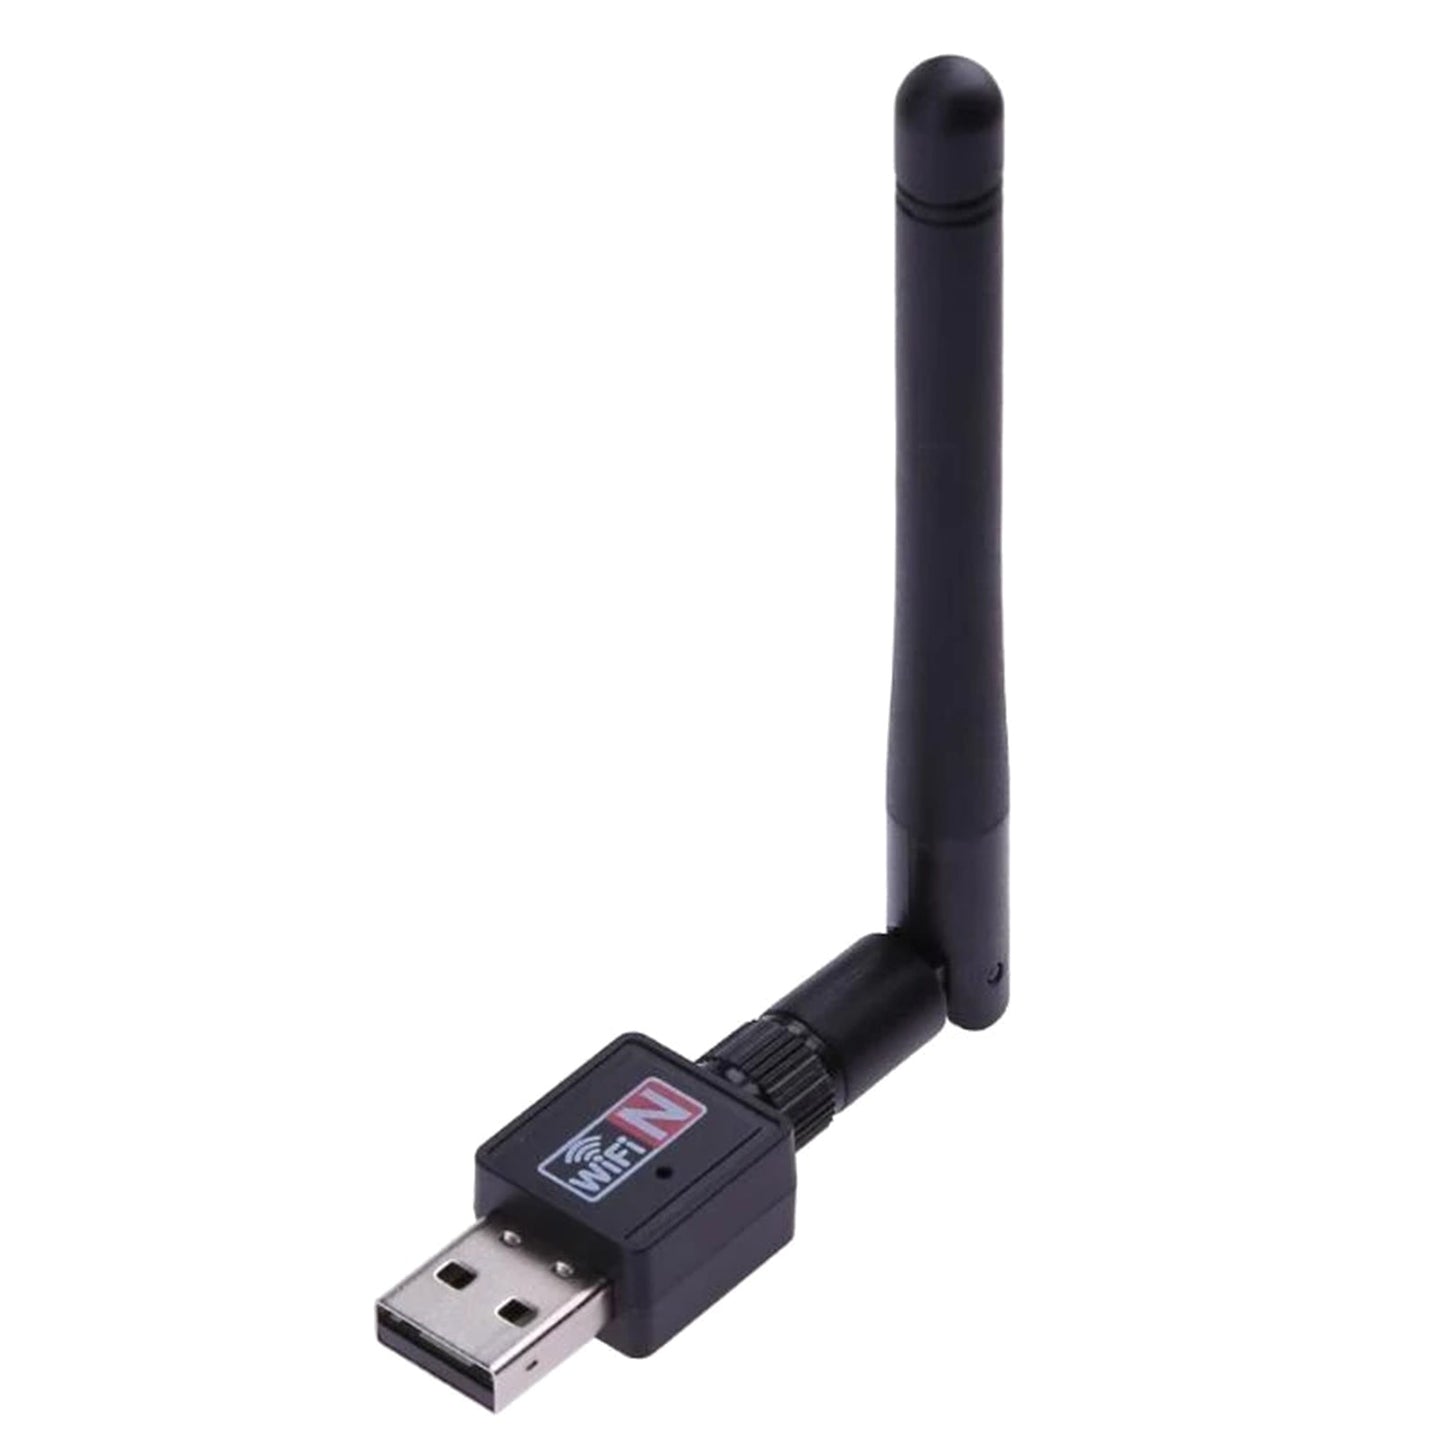 Adaptateur réseau WiFi USB sans fil 300 Mbps 802.11n avec antenne pour Windows/XP/Mac